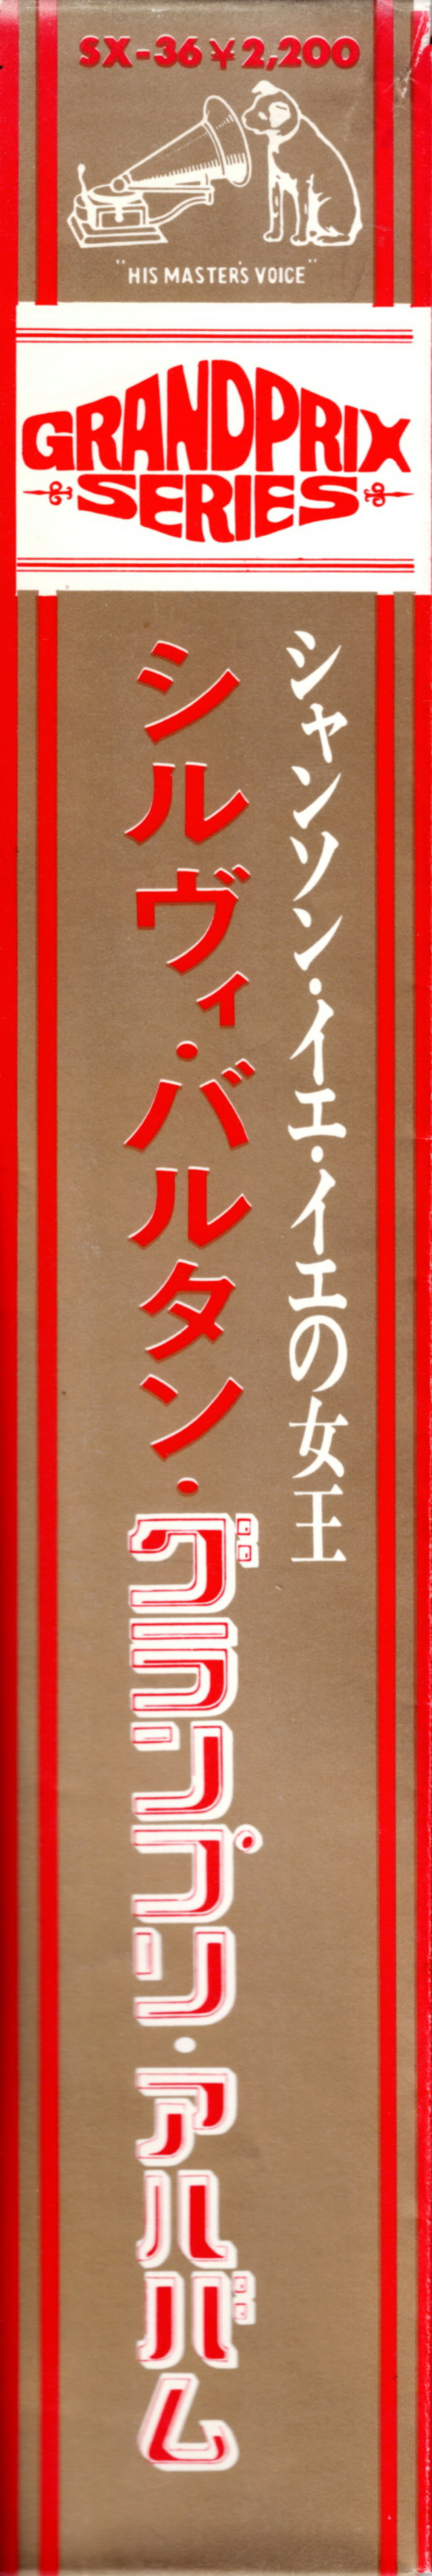 Discographie Japonaise - 4ème partie (33 T COMPILATION) - Page 3 Jpn_2985